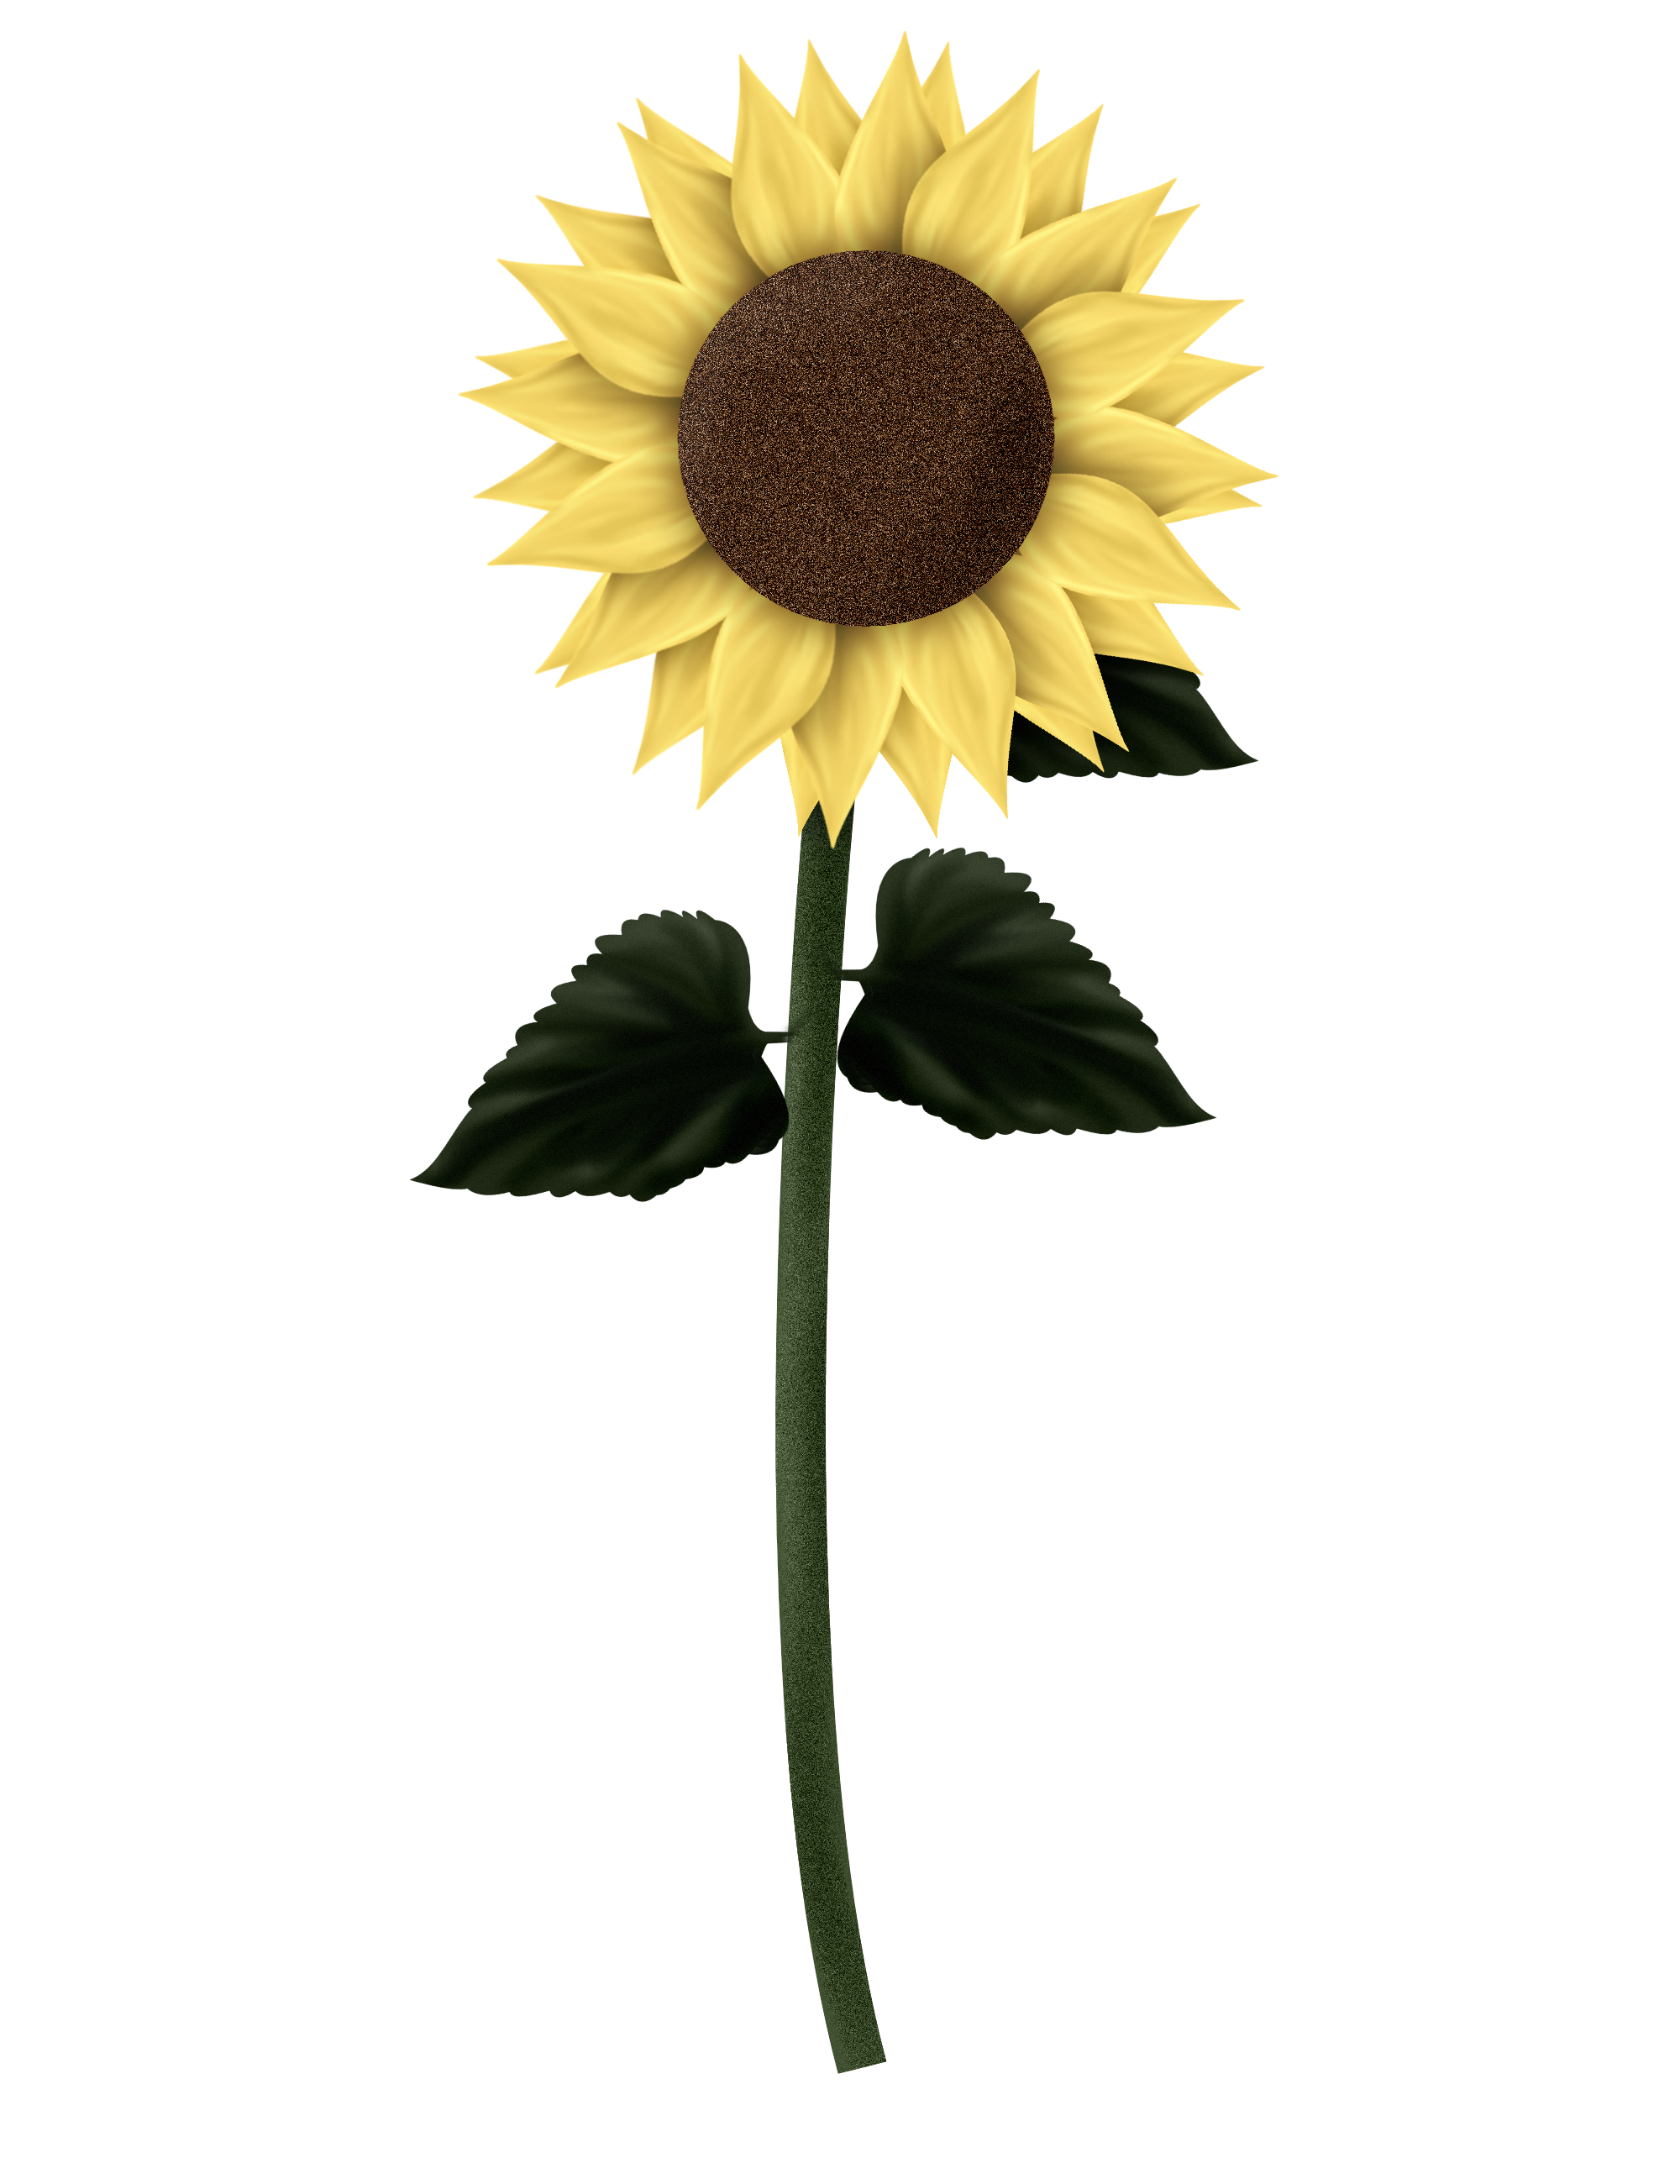 Sunflower No Background